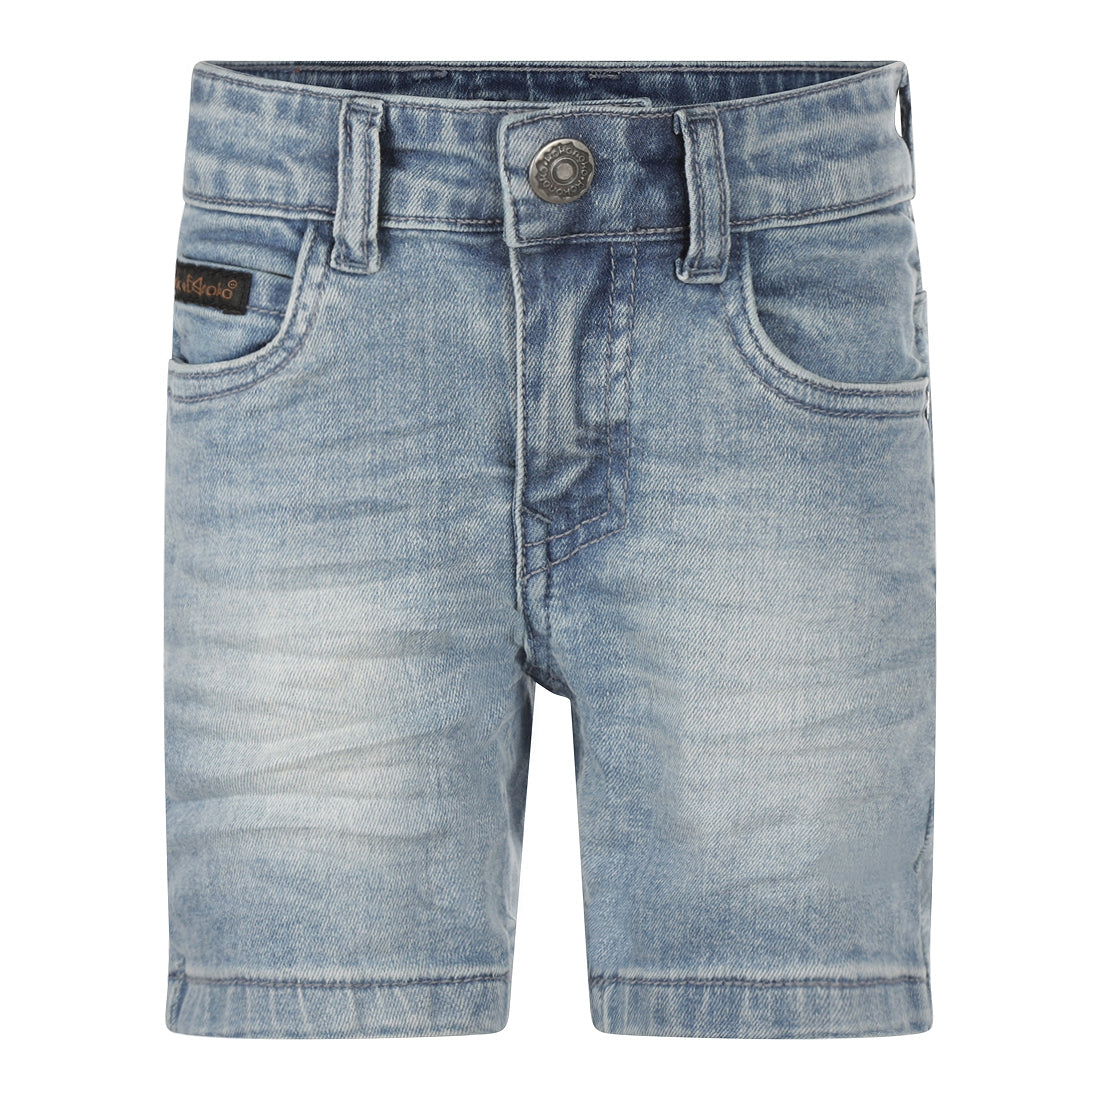 Jongens Jeans shorts van Koko Noko in de kleur Blue jeans in maat 128.